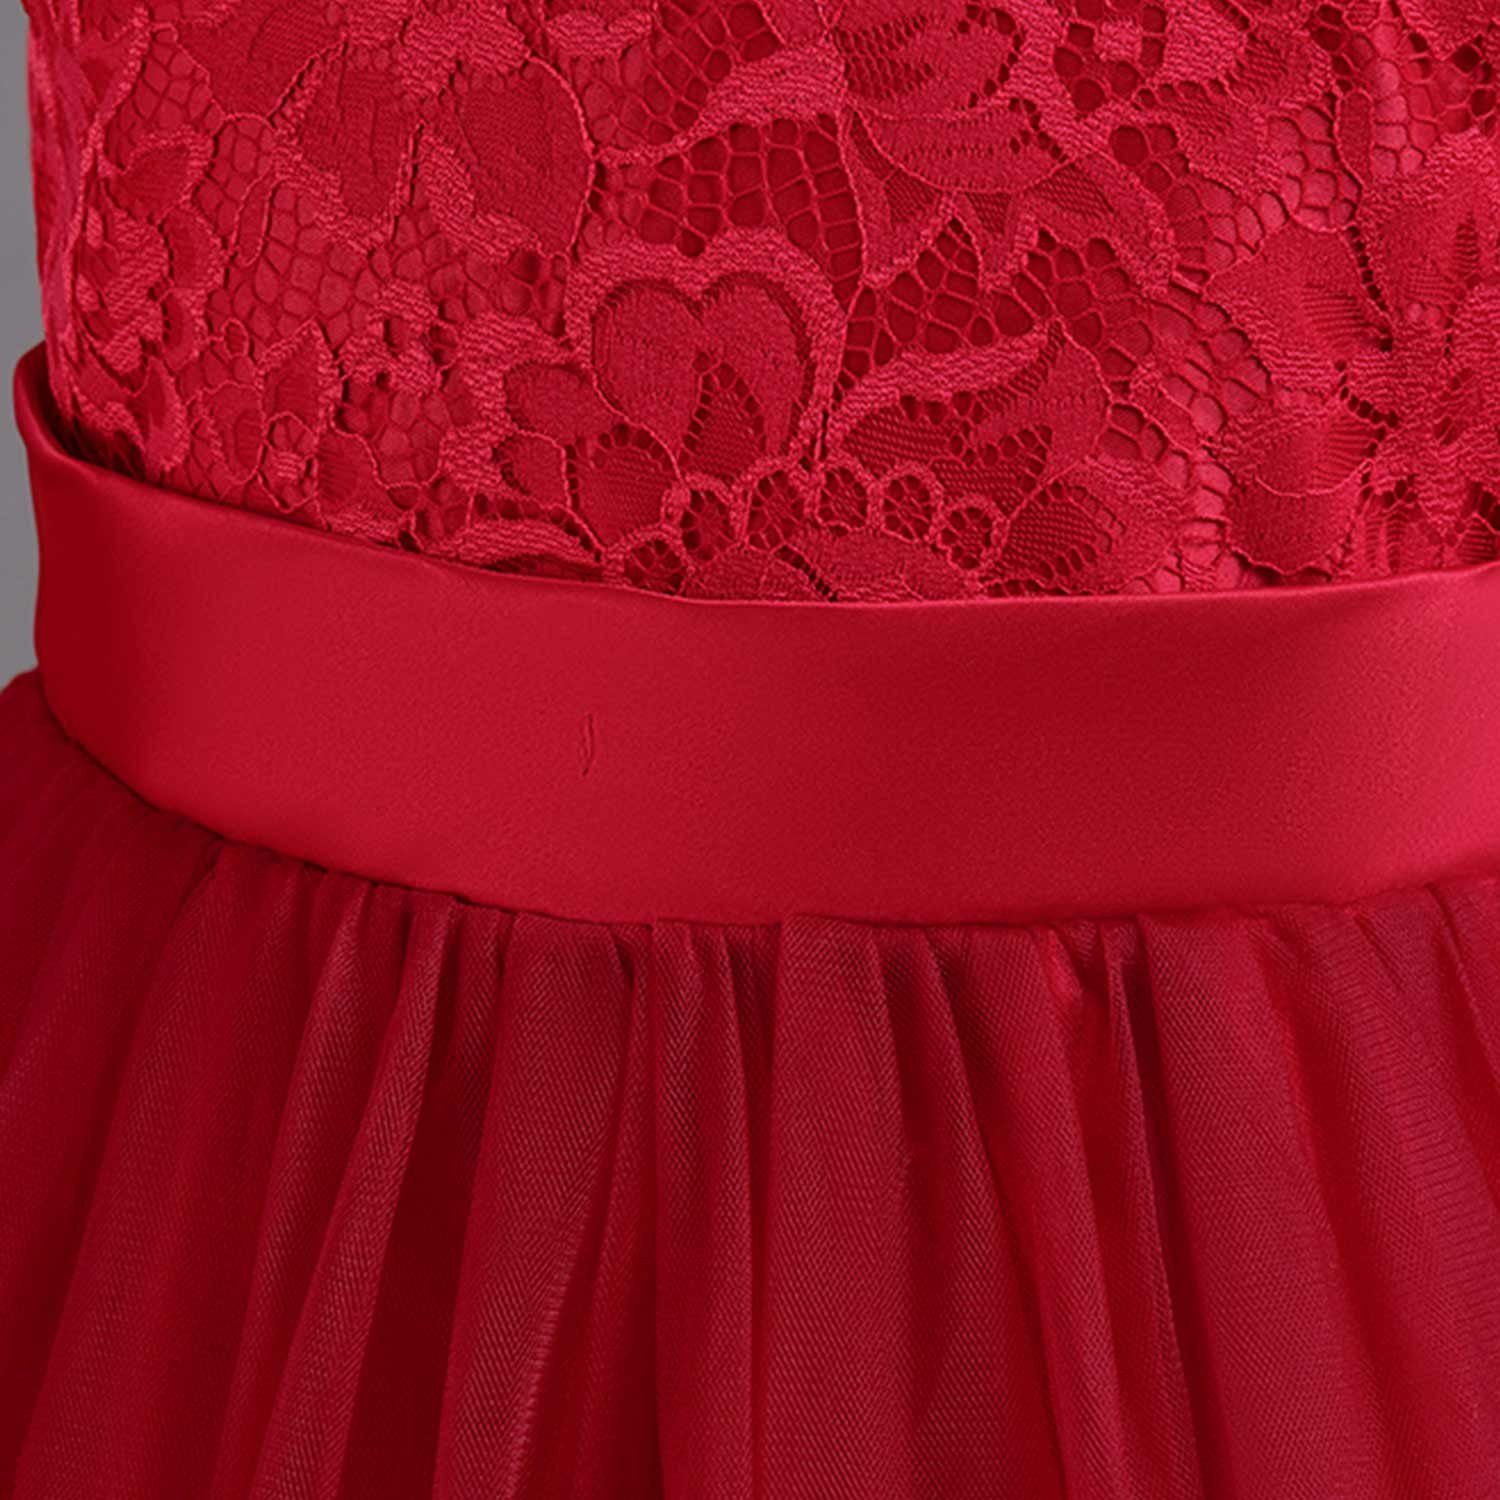 Kinderkleider Prinzessinnenkleid Rot Daisred Abendkleid Blumenmädchen Tüllkleider